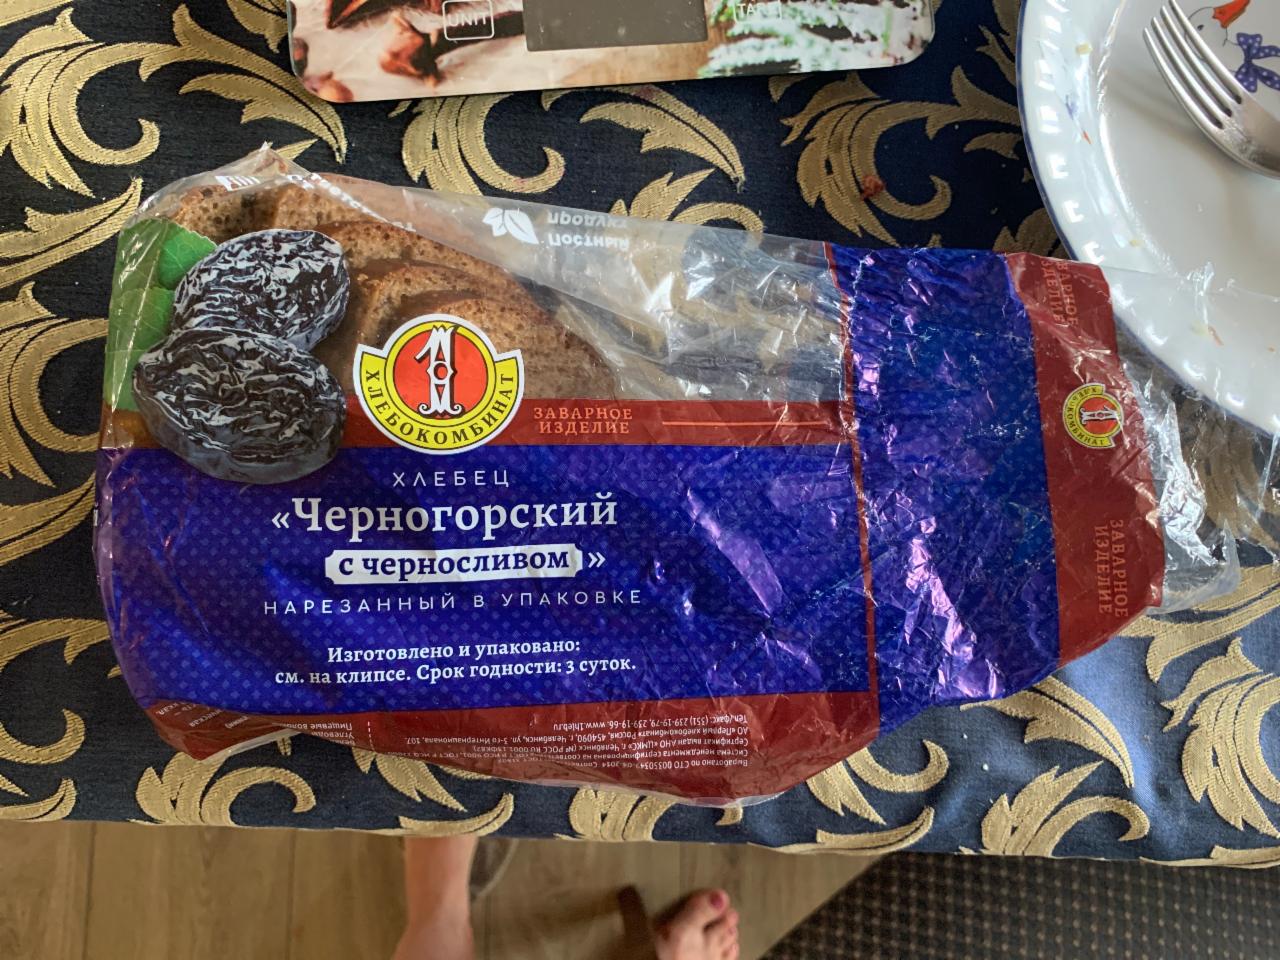 Фото - хлебец Черногородский с черносливом 1 хлебокомбинат